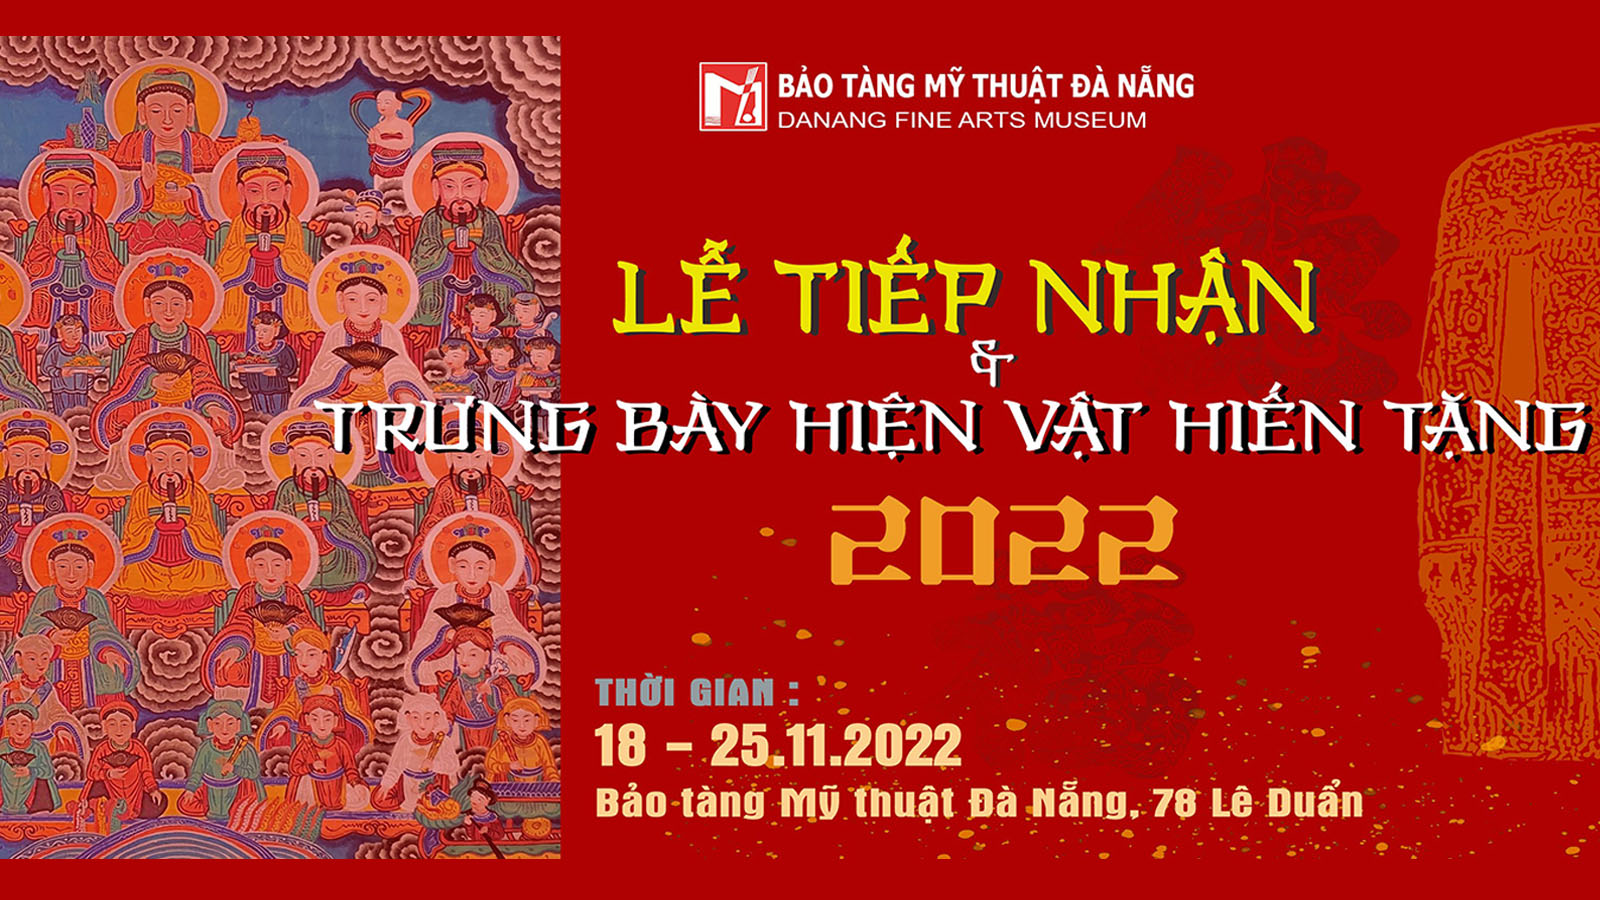 Le Tiep Nhan Va Trung Bay Hien Vat Hien Tang Nam 2022 Tai Bao Tang My Thuat Da Nang